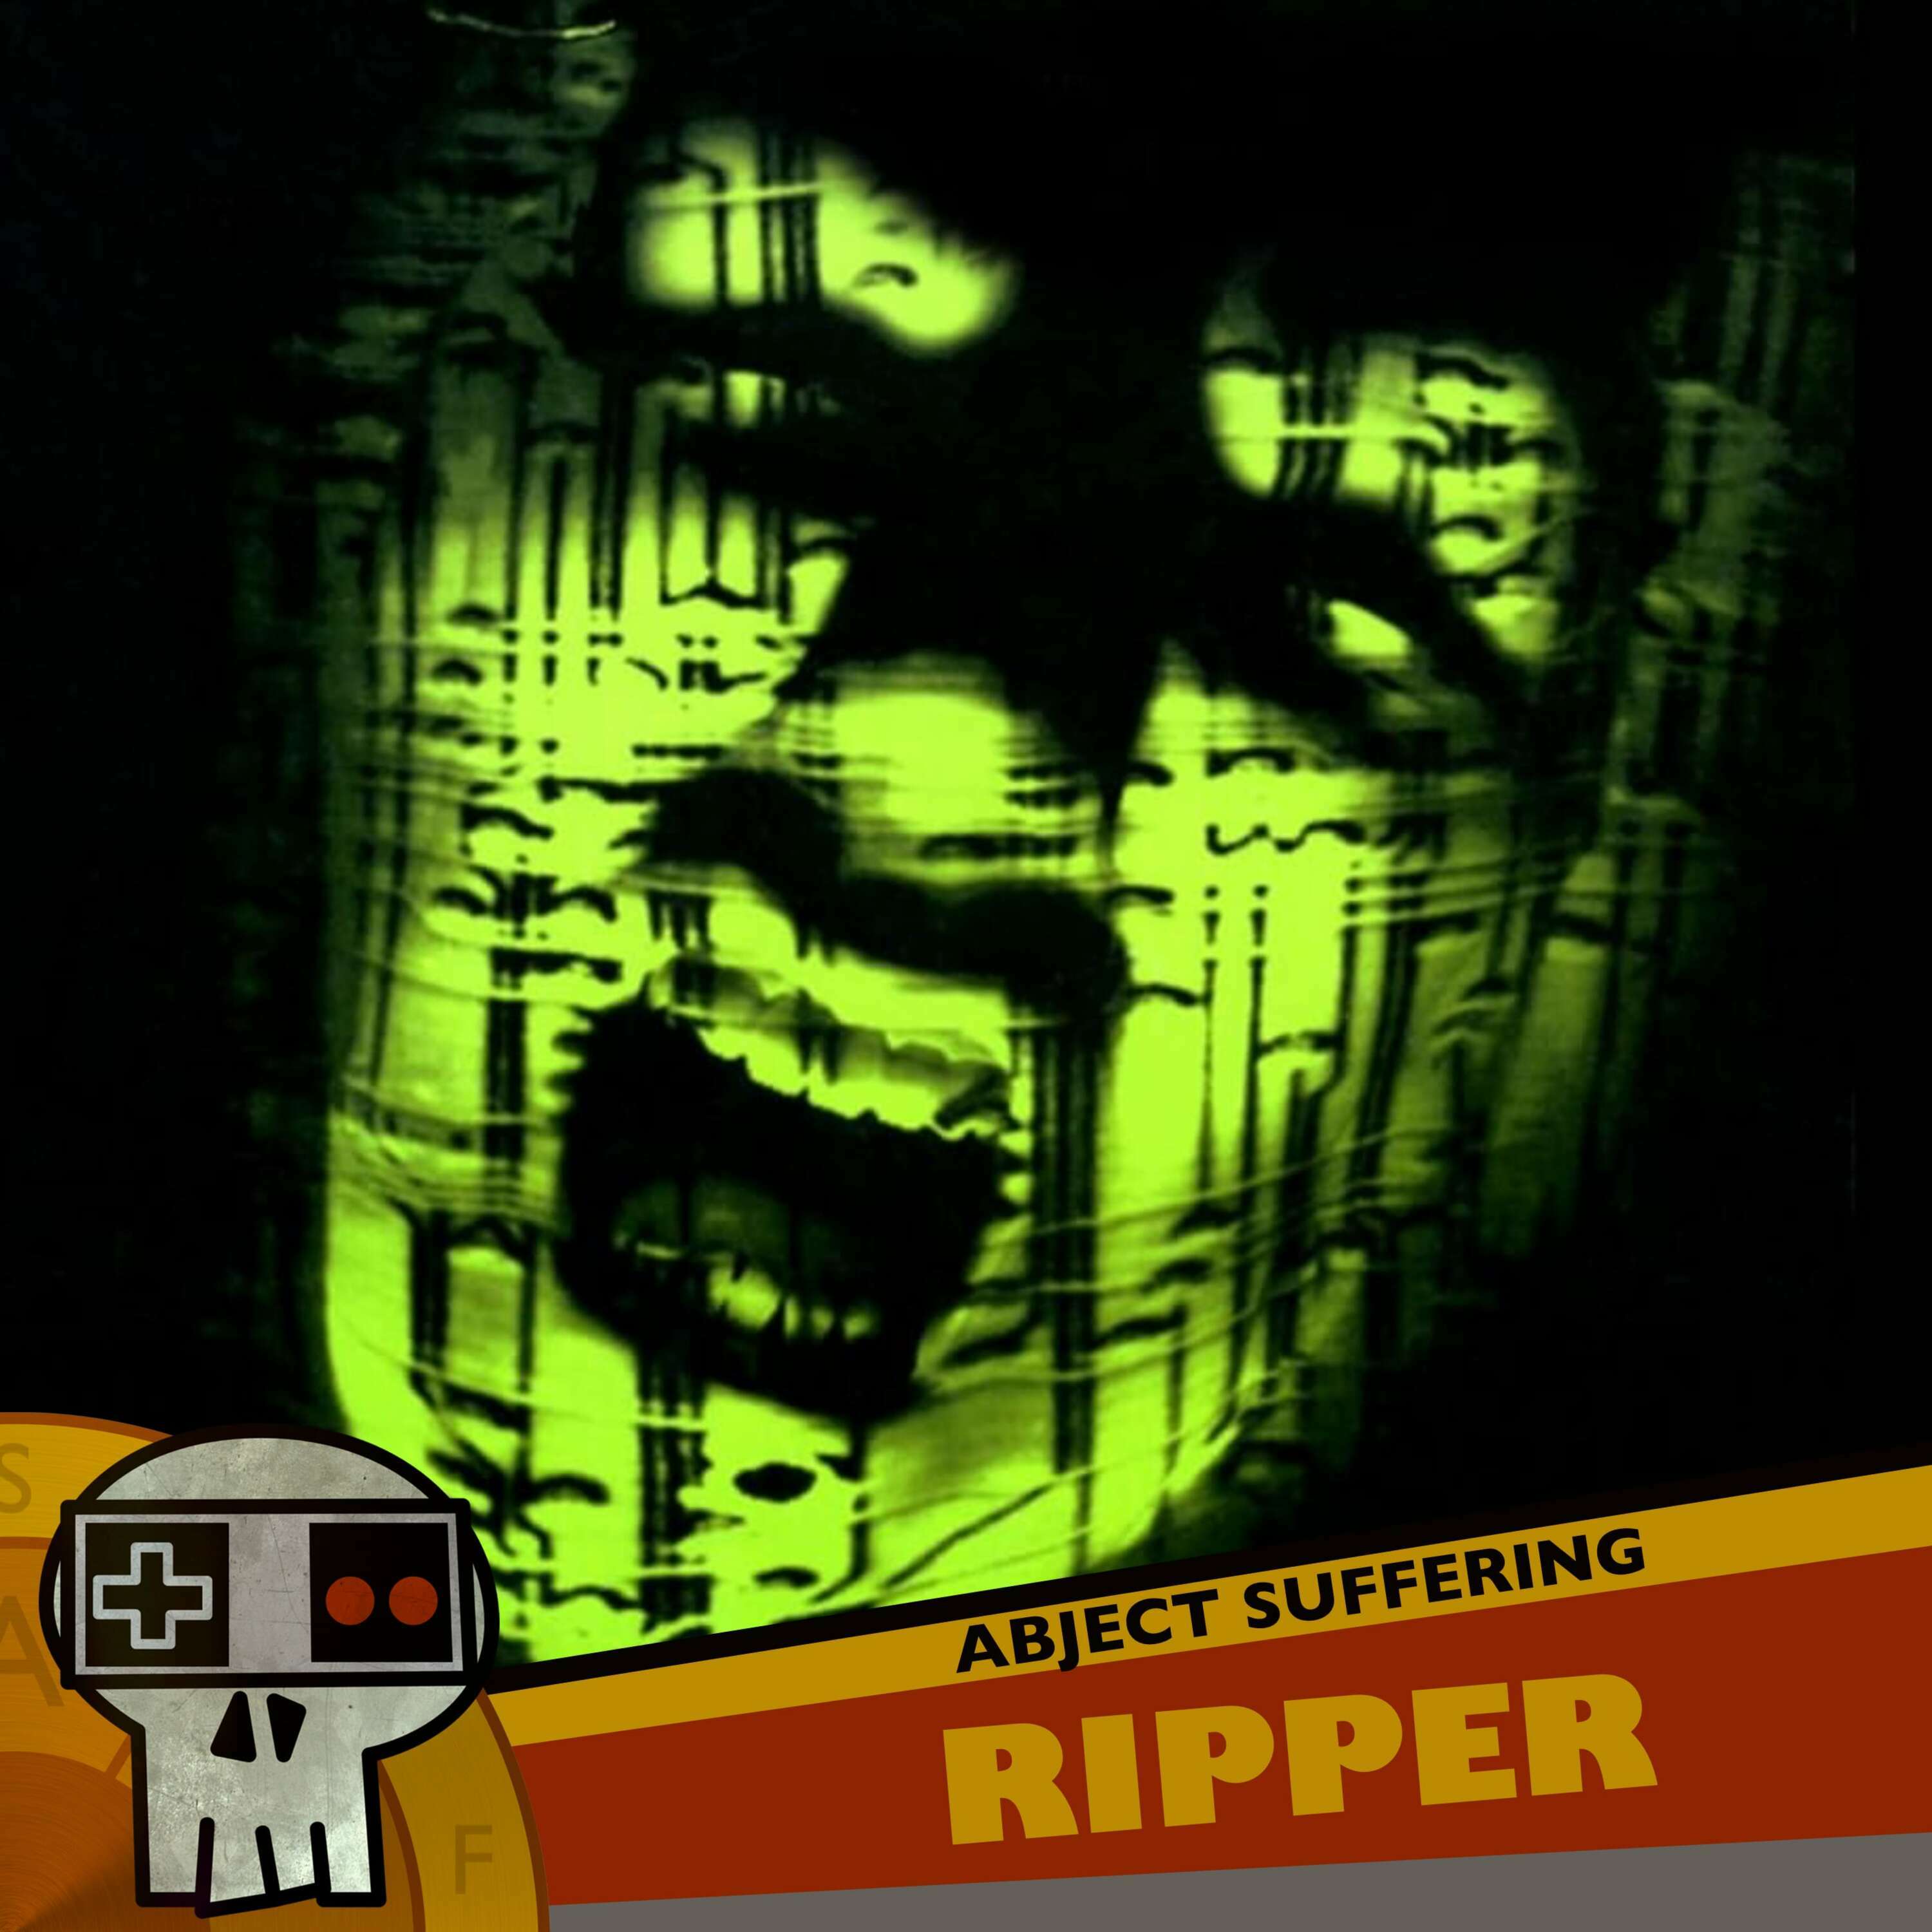 548: The Ripper